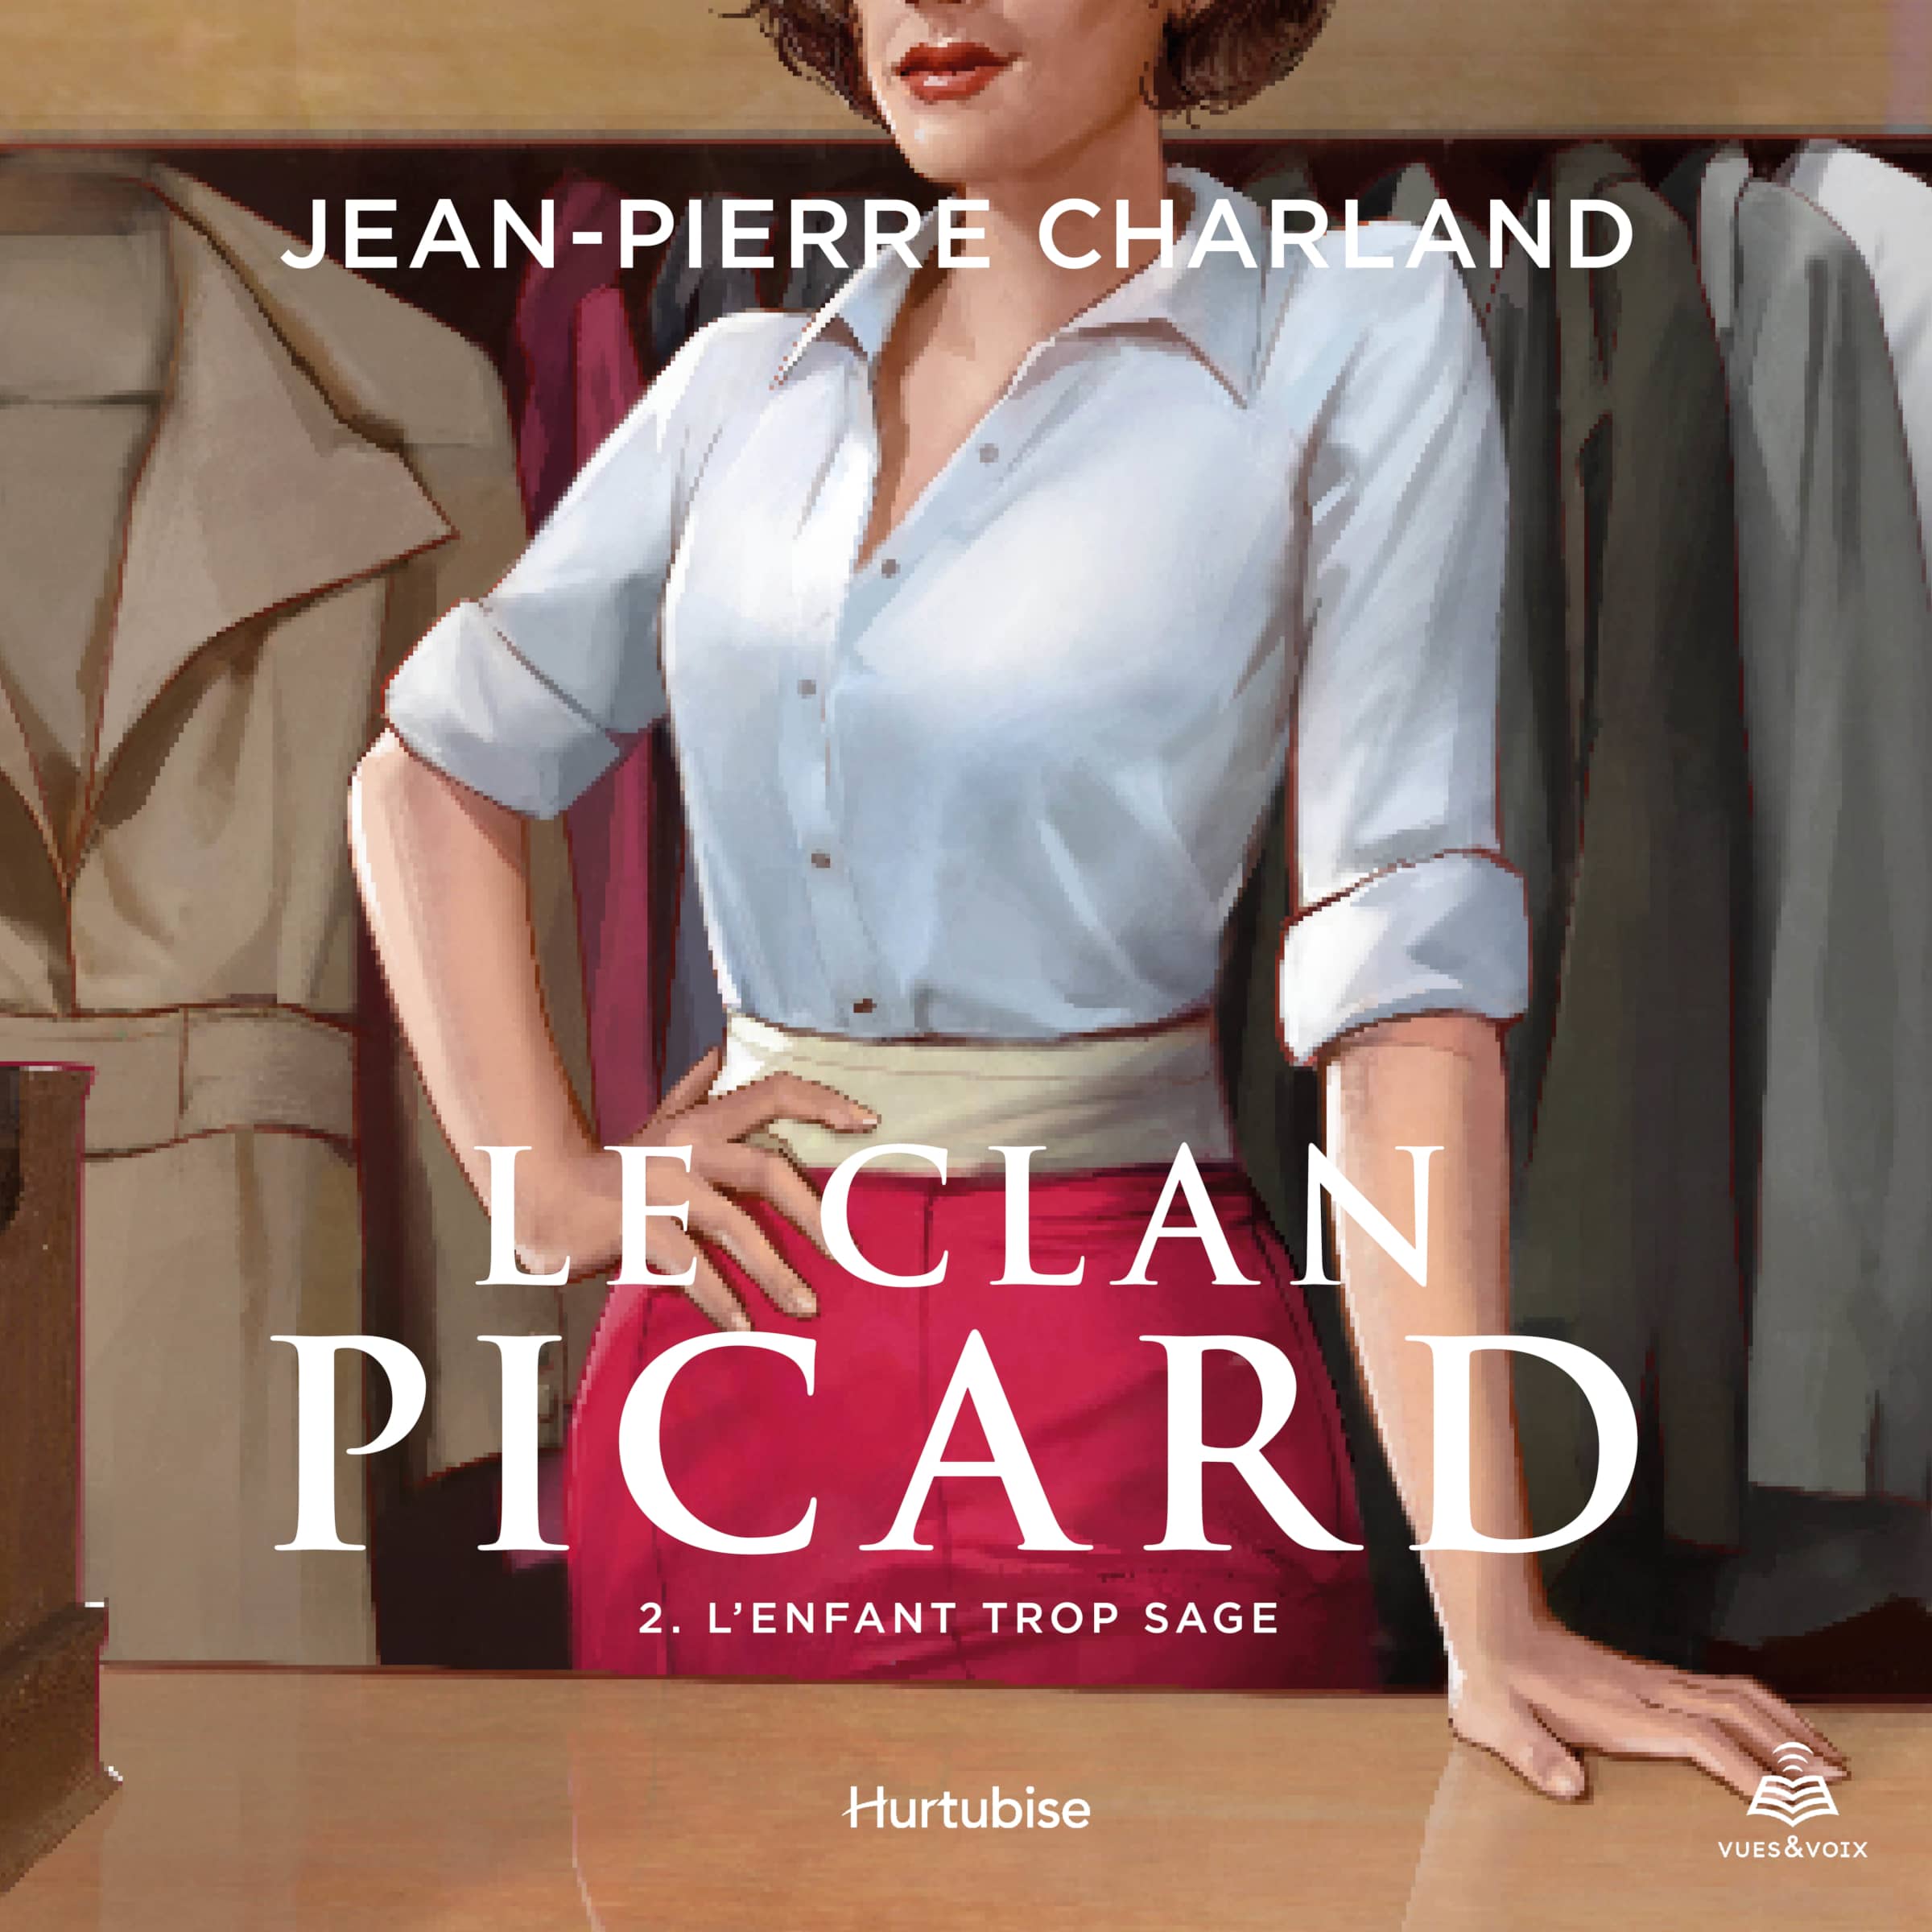 Couverture du livre audio Le clan Picard tome 2 De Jean-Pierre Charland 